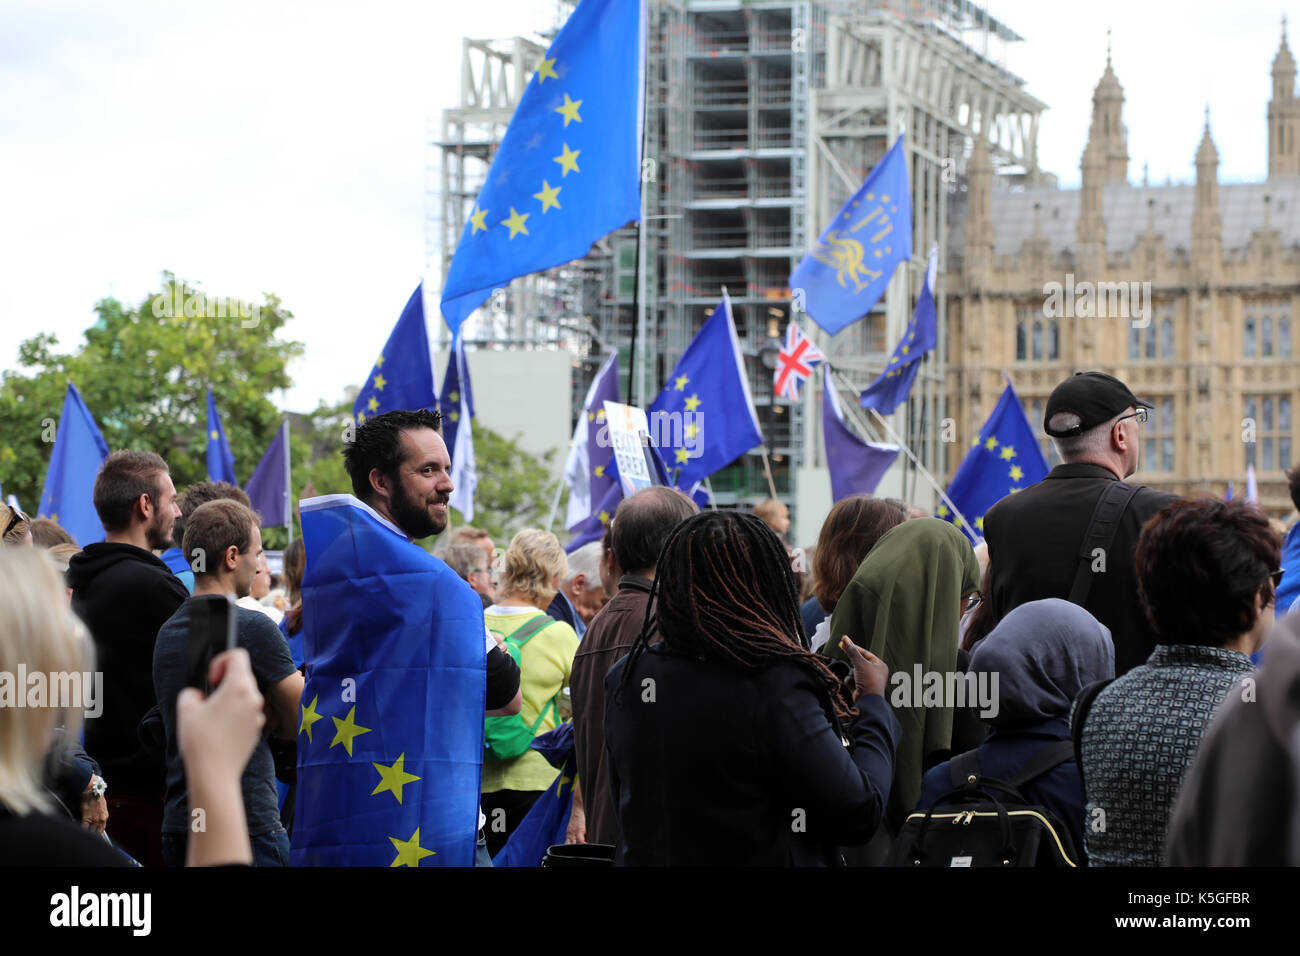 Londra, Regno Unito. Il 9 settembre, 2017. Un uomo avvolto in una bandiera UE sorge in Piazza del Parlamento giardino in Westminster, Londra centrale, durante il popolo del marzo per l'Europa, un anti-Brexit rally, il 9 settembre 2017. Credito: Dominic Dudley/Alamy Live News Foto Stock